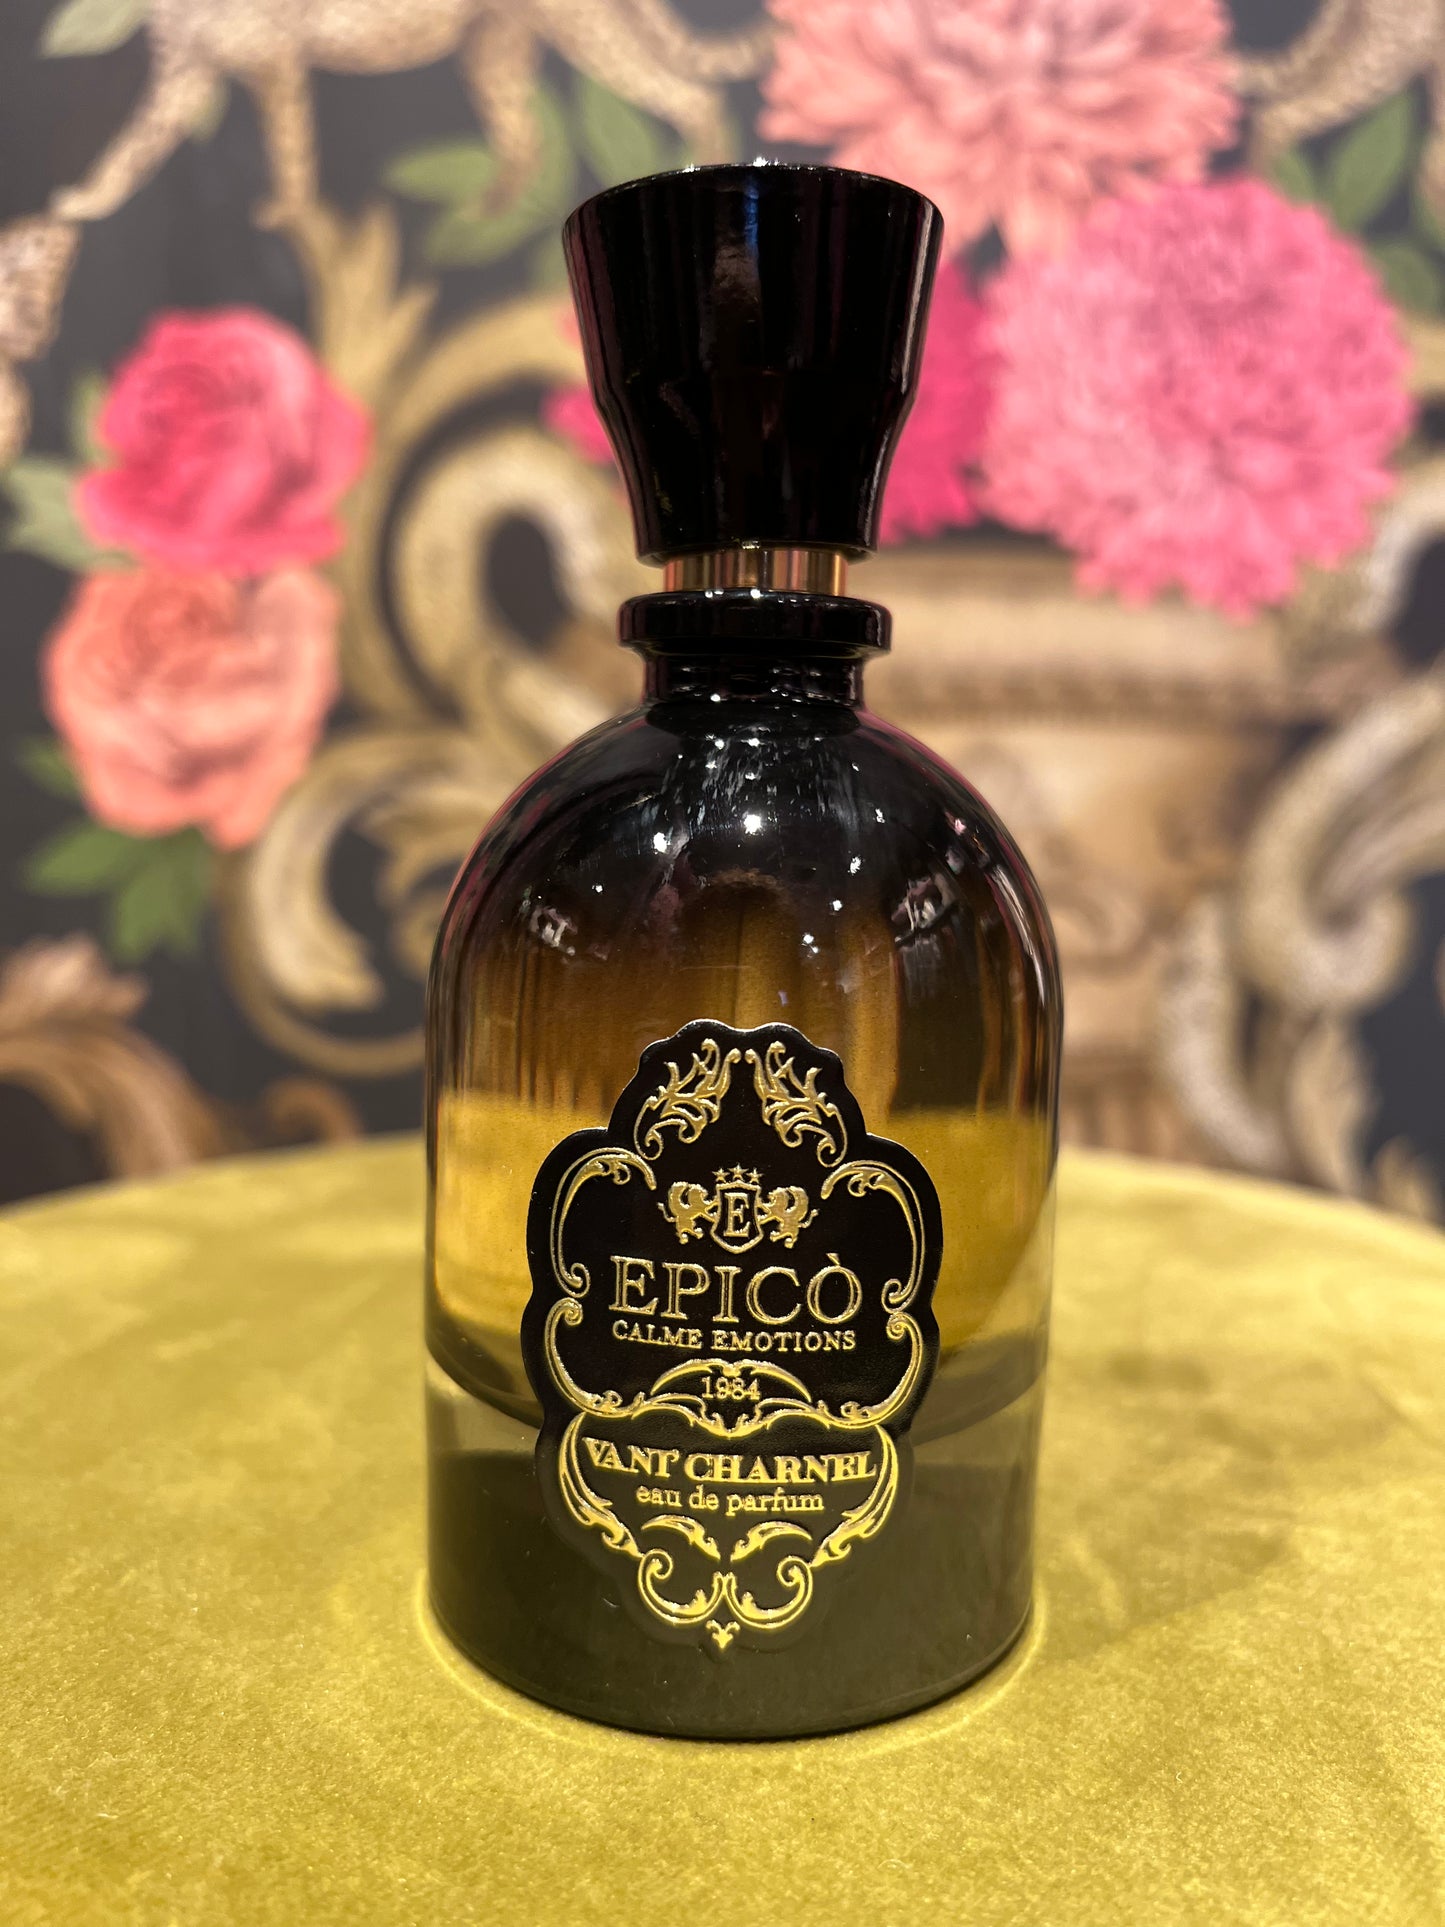 Epico’ eau de parfum vani’ charnel